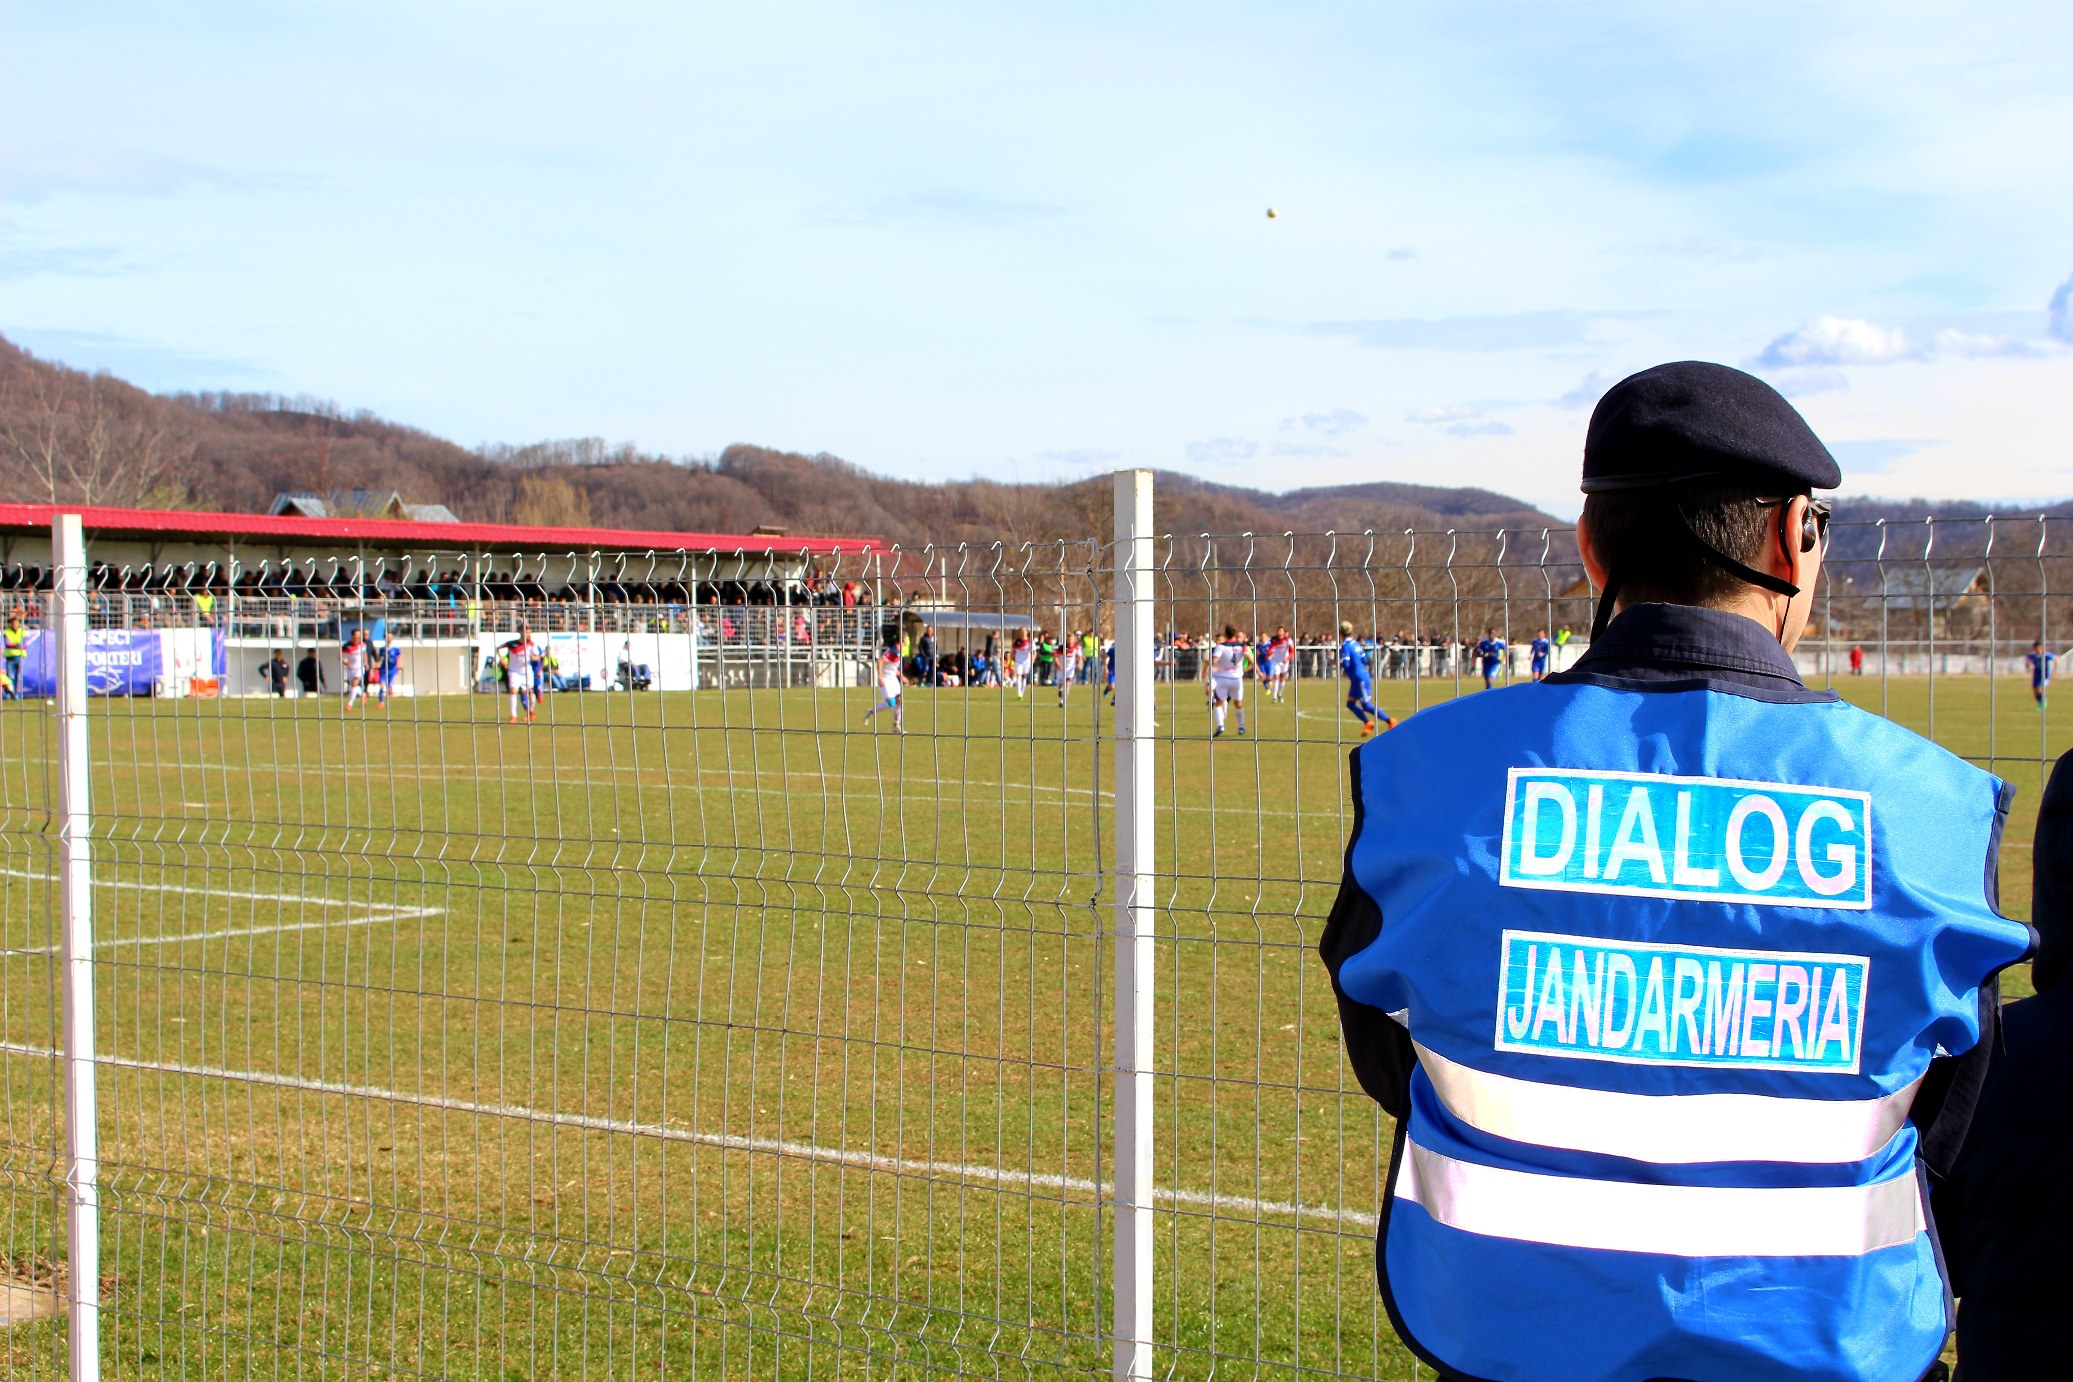 Jandarmii dâmboviţeni vor asigura astăzi măsurile de ordine și siguranță publică pe timpul desfăşurării meciului de fotbal, din orașul Pucioasa